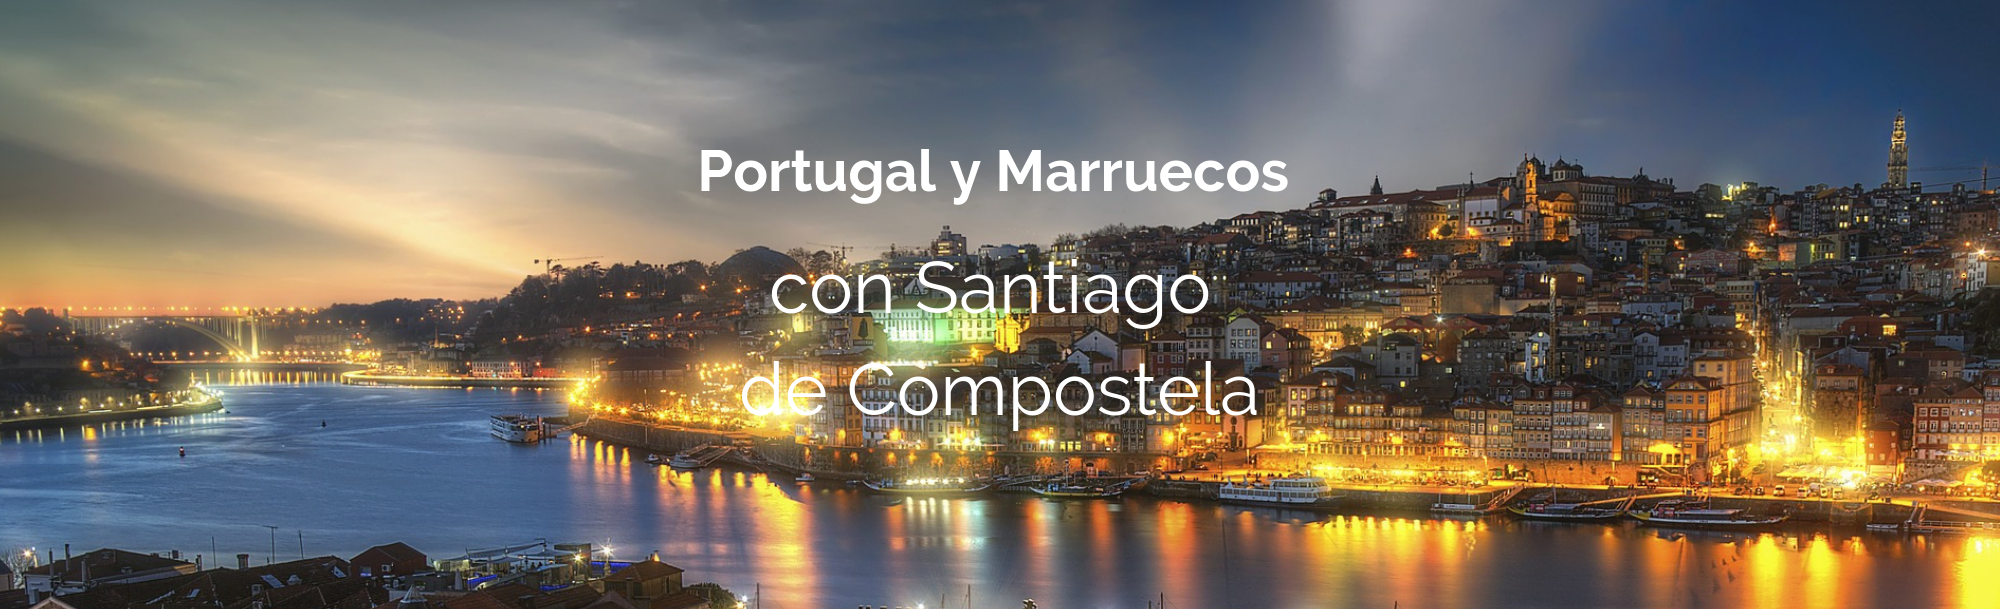 Portugal y Marruecos con Santiago de Compostela